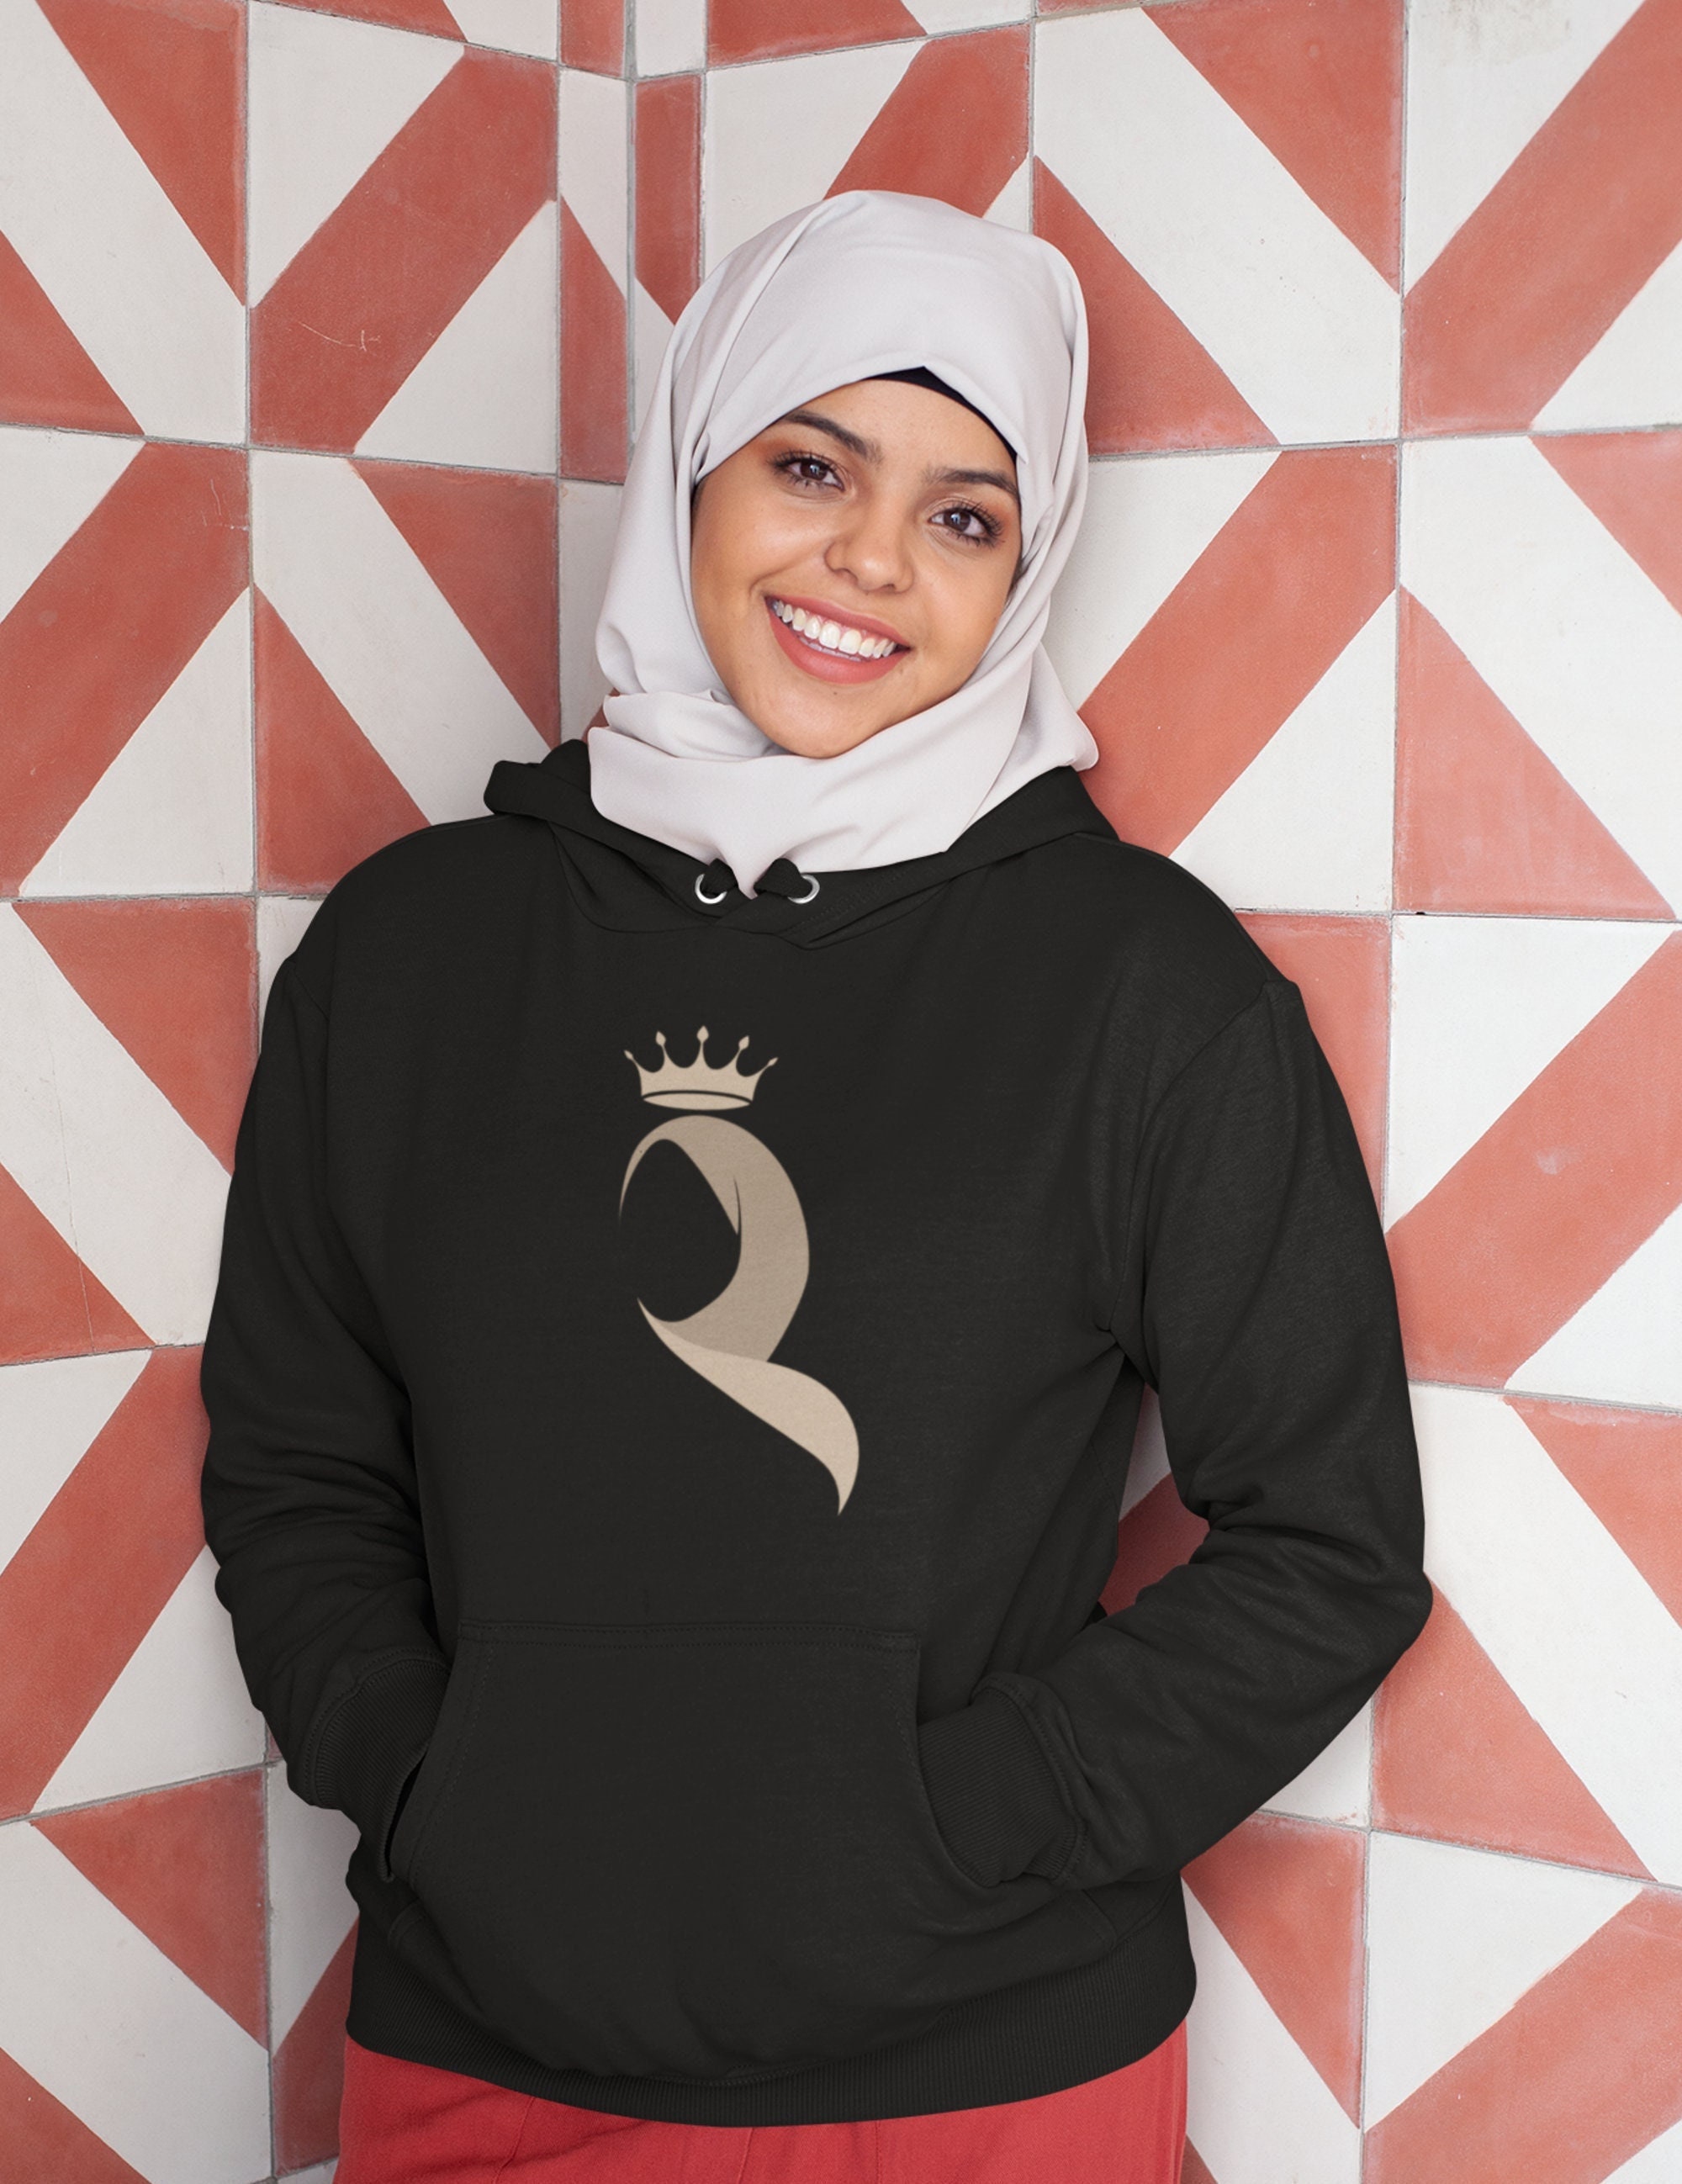 Hijab Pin – Arabic attire